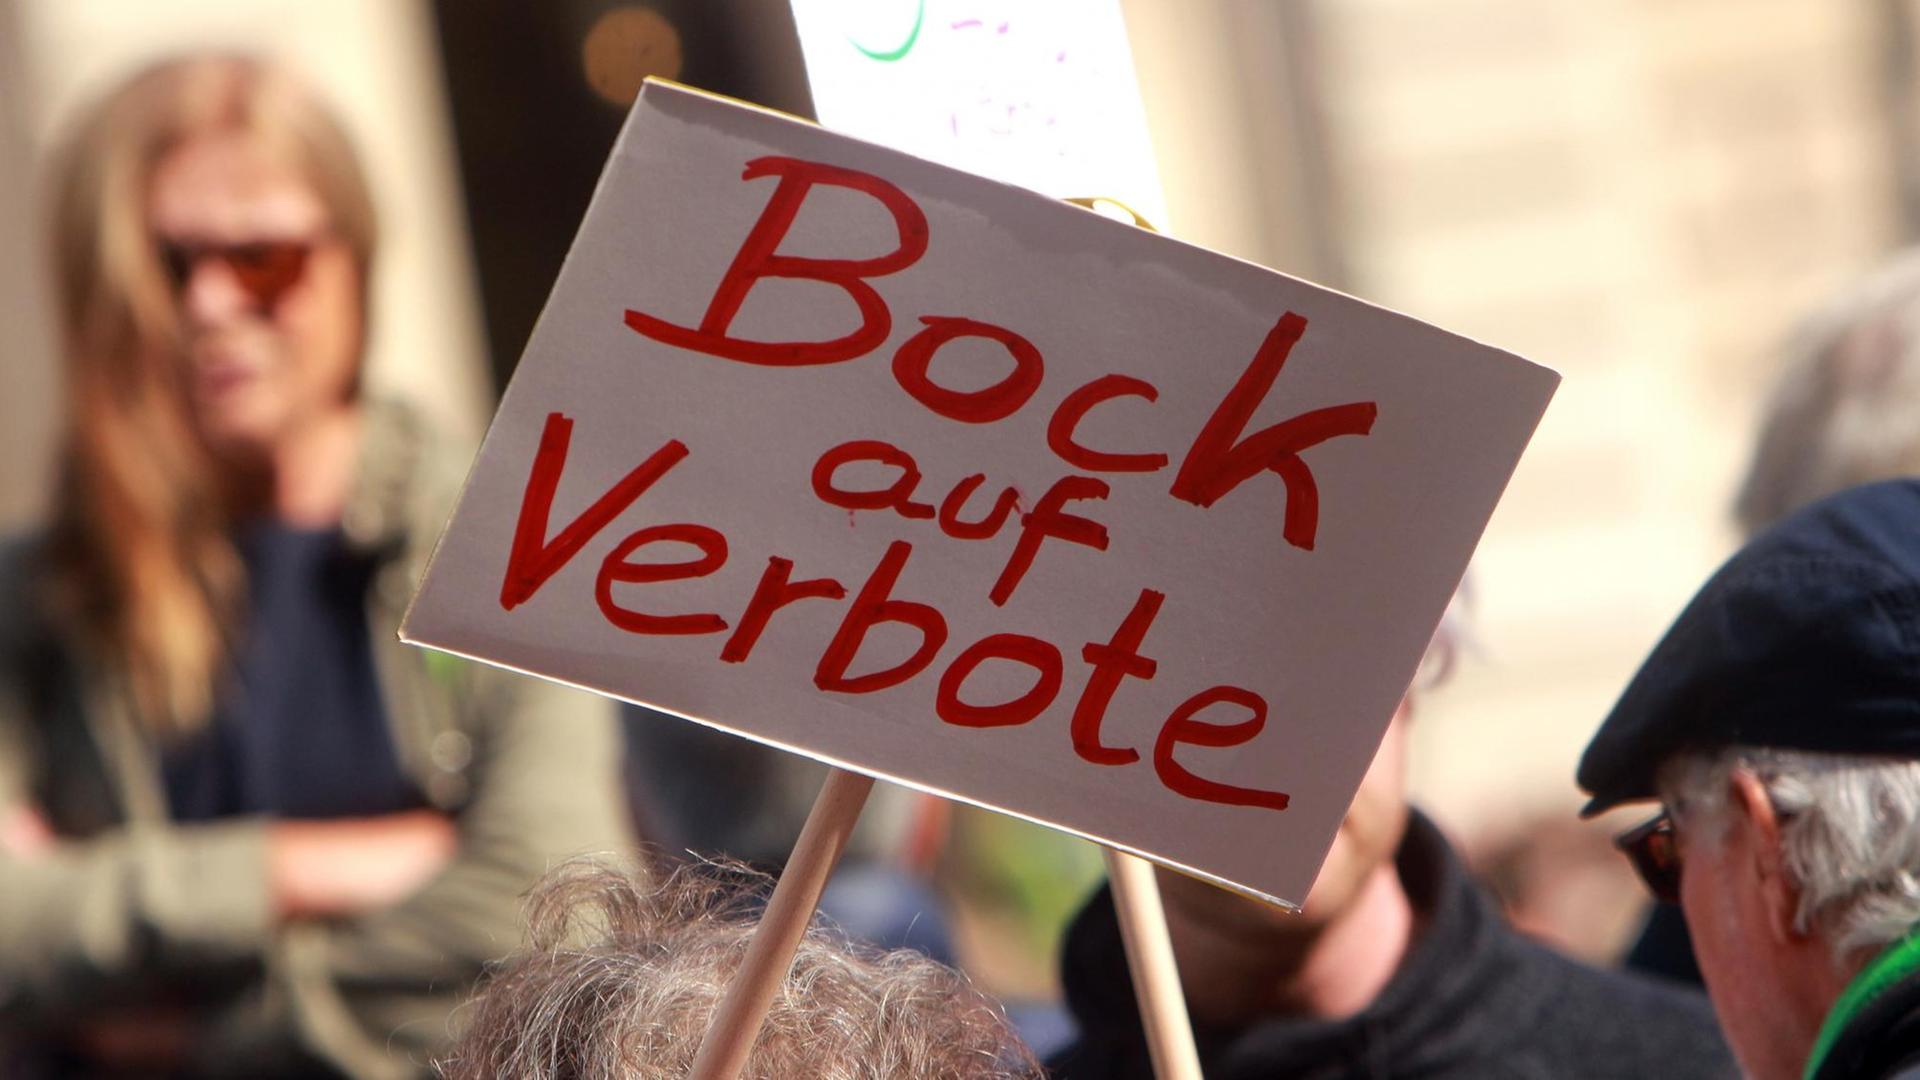 Bei einer Klimademostration auf dem Frankfurter Opernplatz wird ein Schild mit der roten Aufschrift "Bock auf Verbote" hochgehalten.